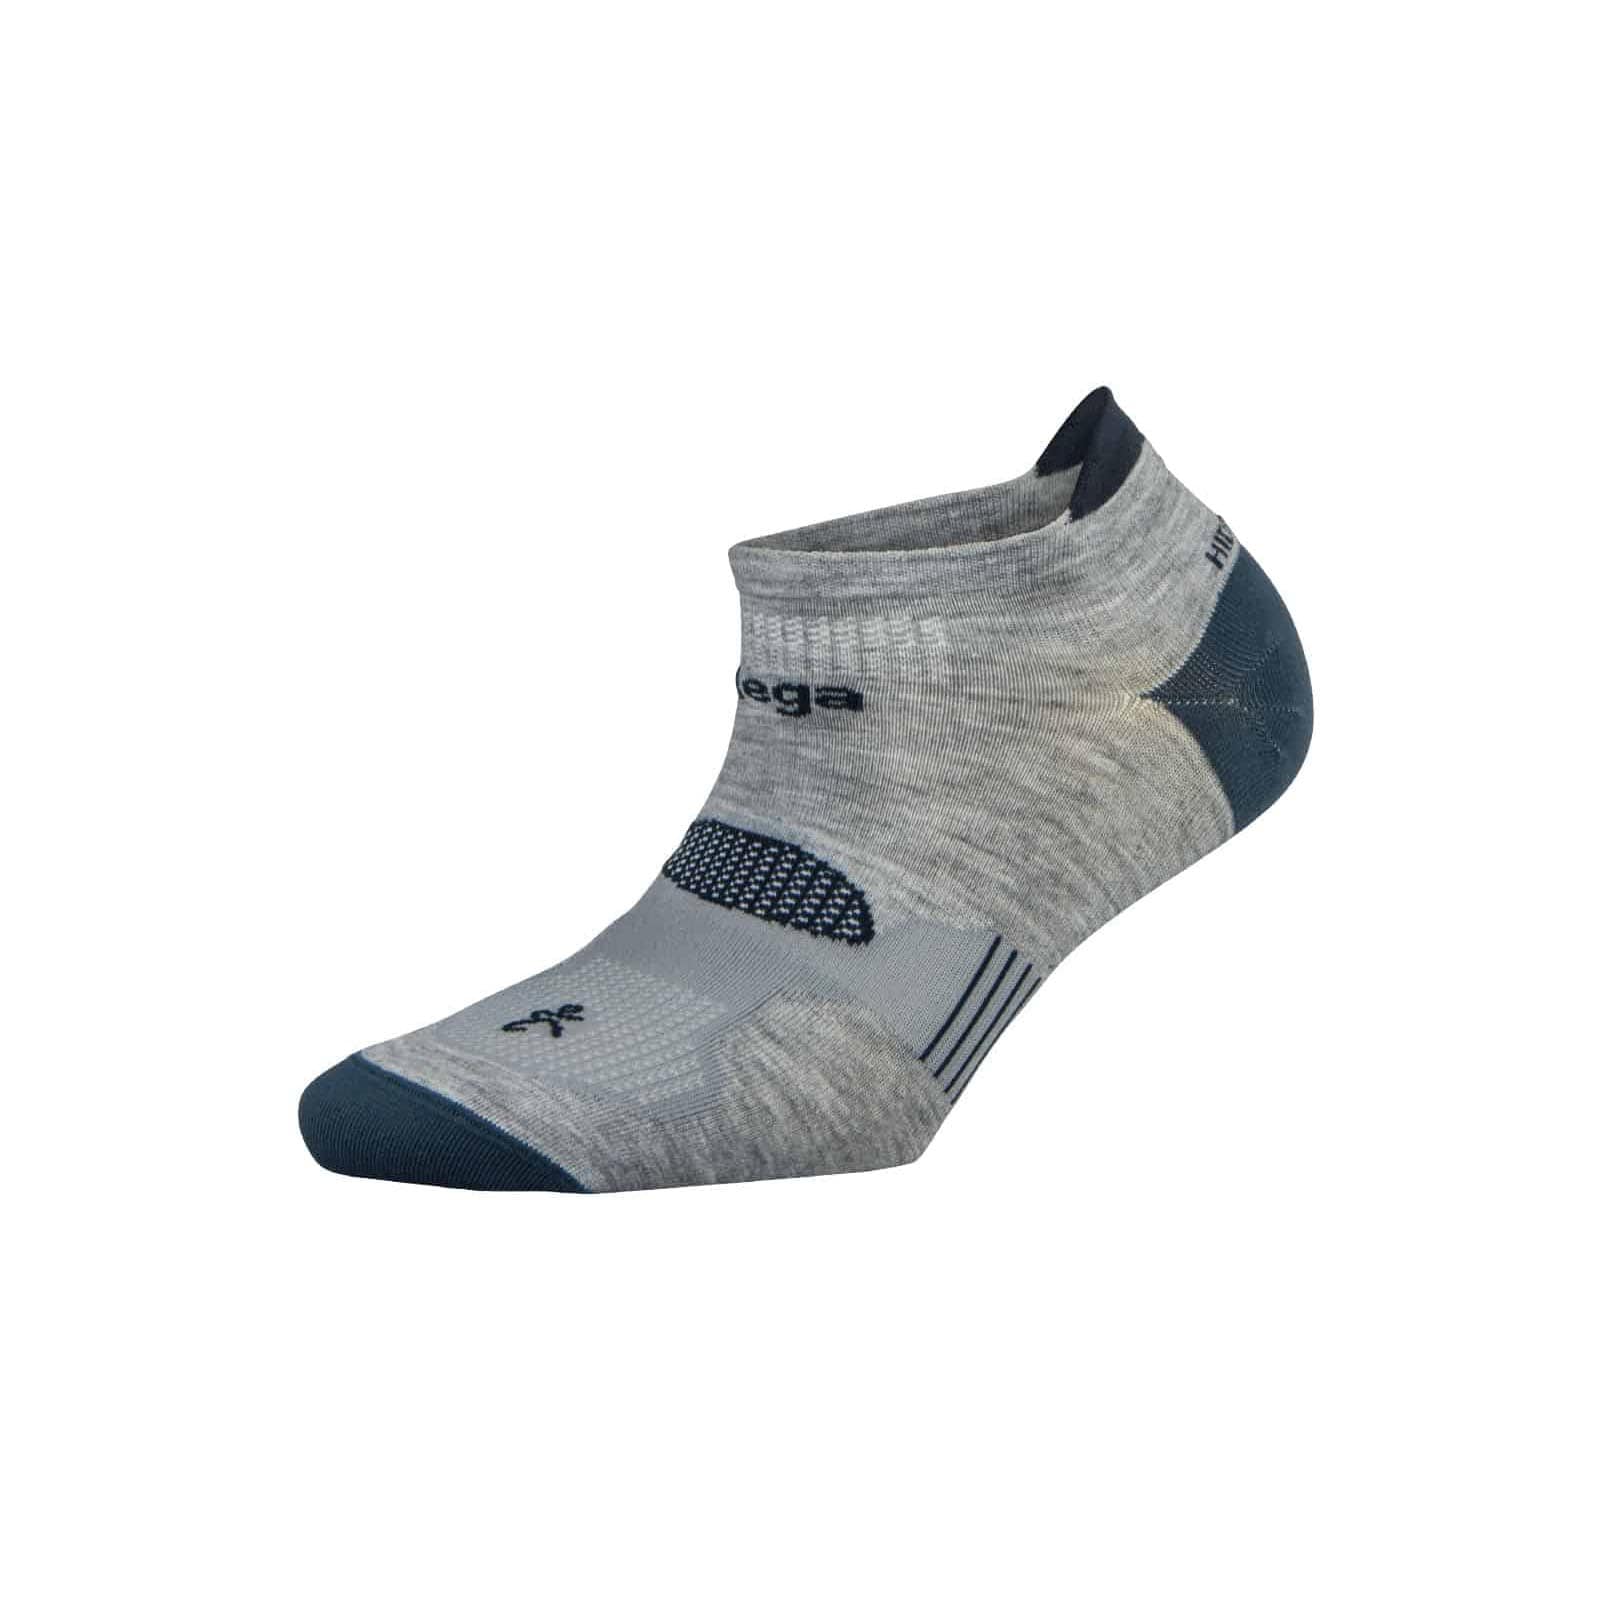 Balega Socks Grey/Legion Blue / Small Hidden Dry Running Socks XMiles